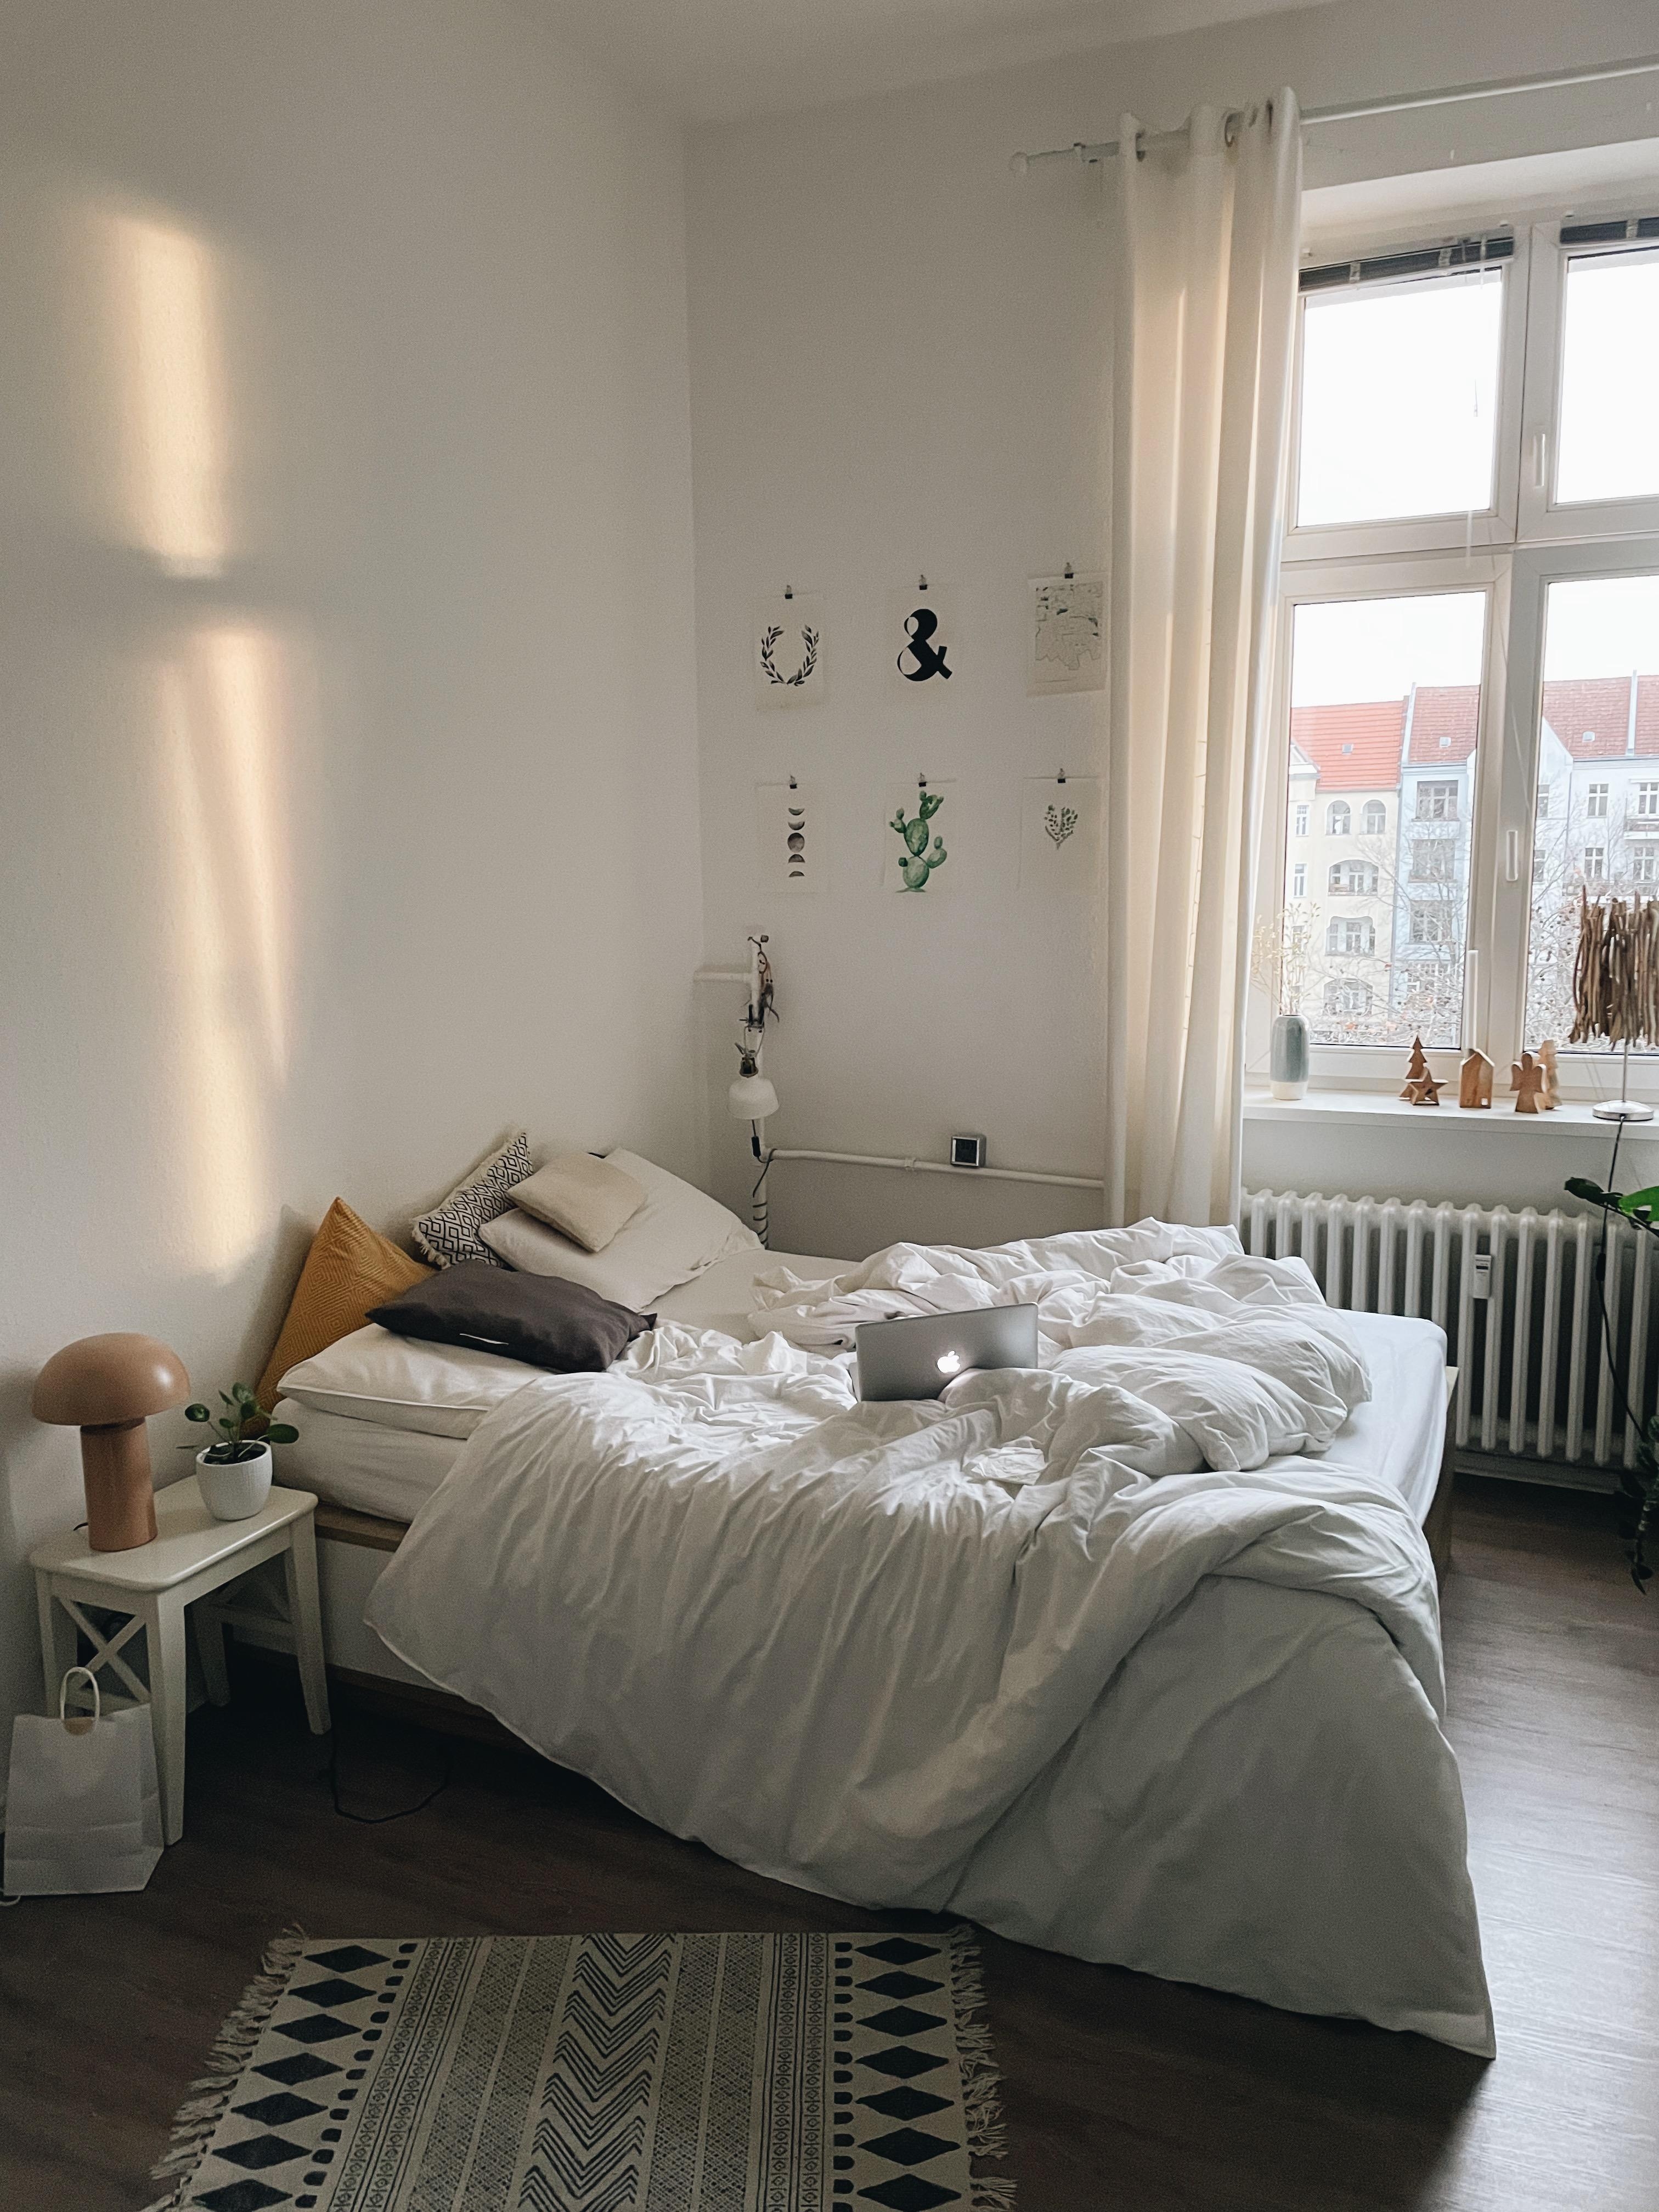 #schlafzimmer #weißebettwäsche #altbauliebe #fenster #licht #sonne #morgensonne